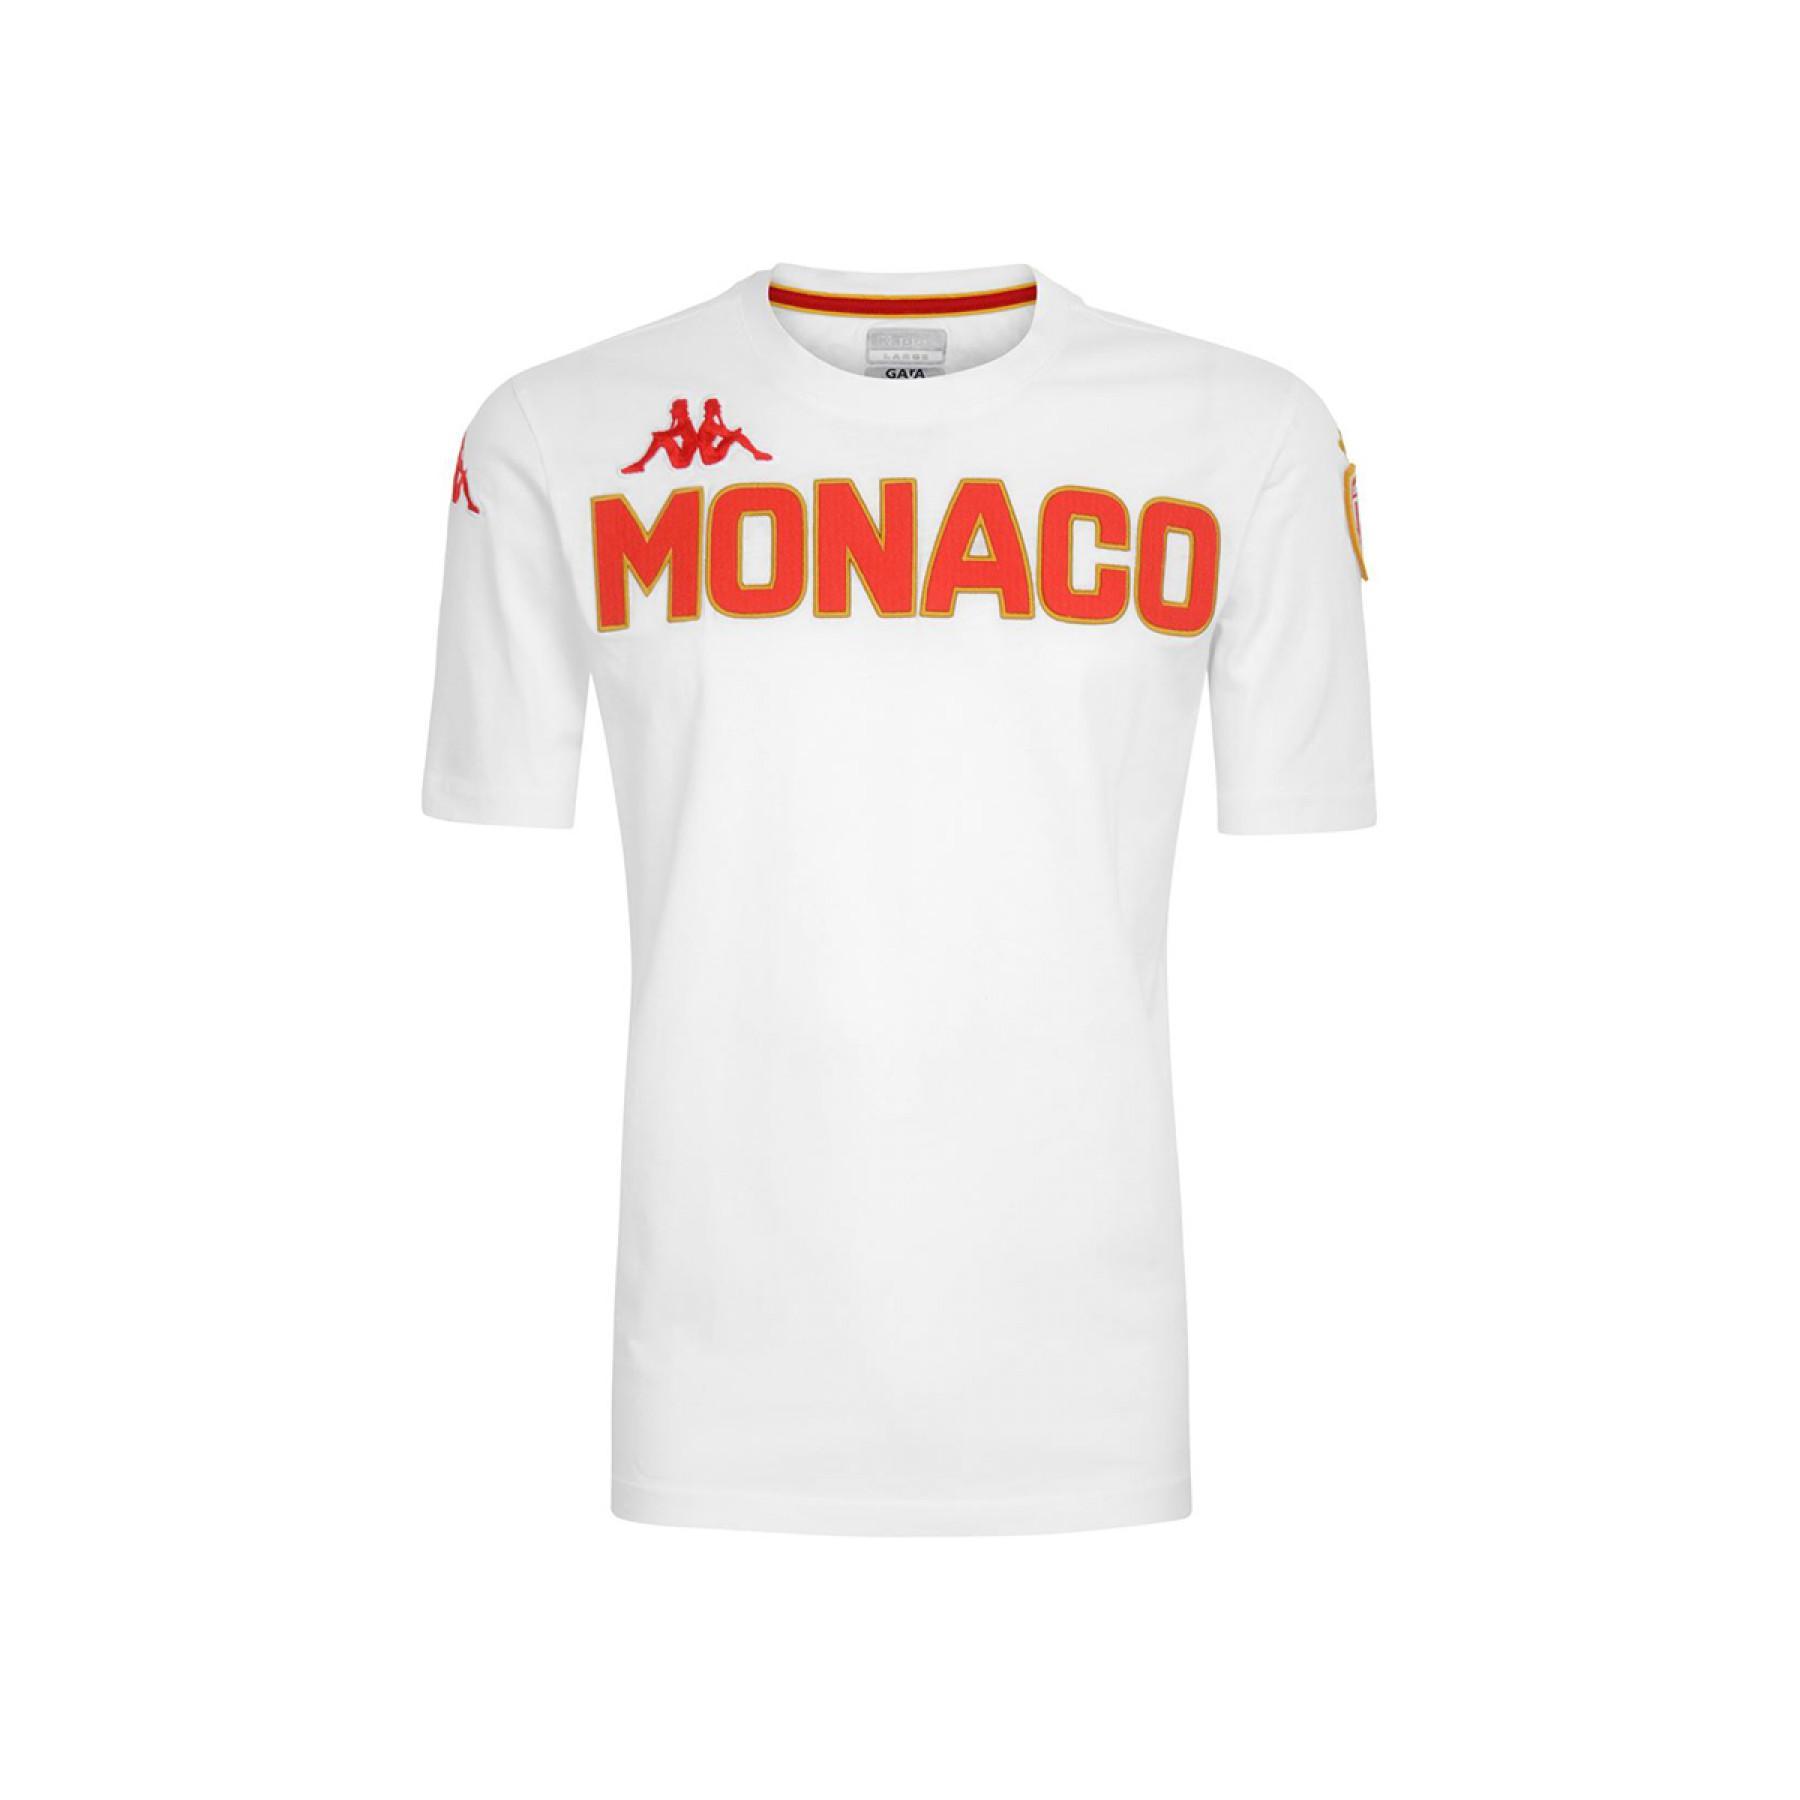 Child's T-shirt AS Monaco 2020/21 eroi